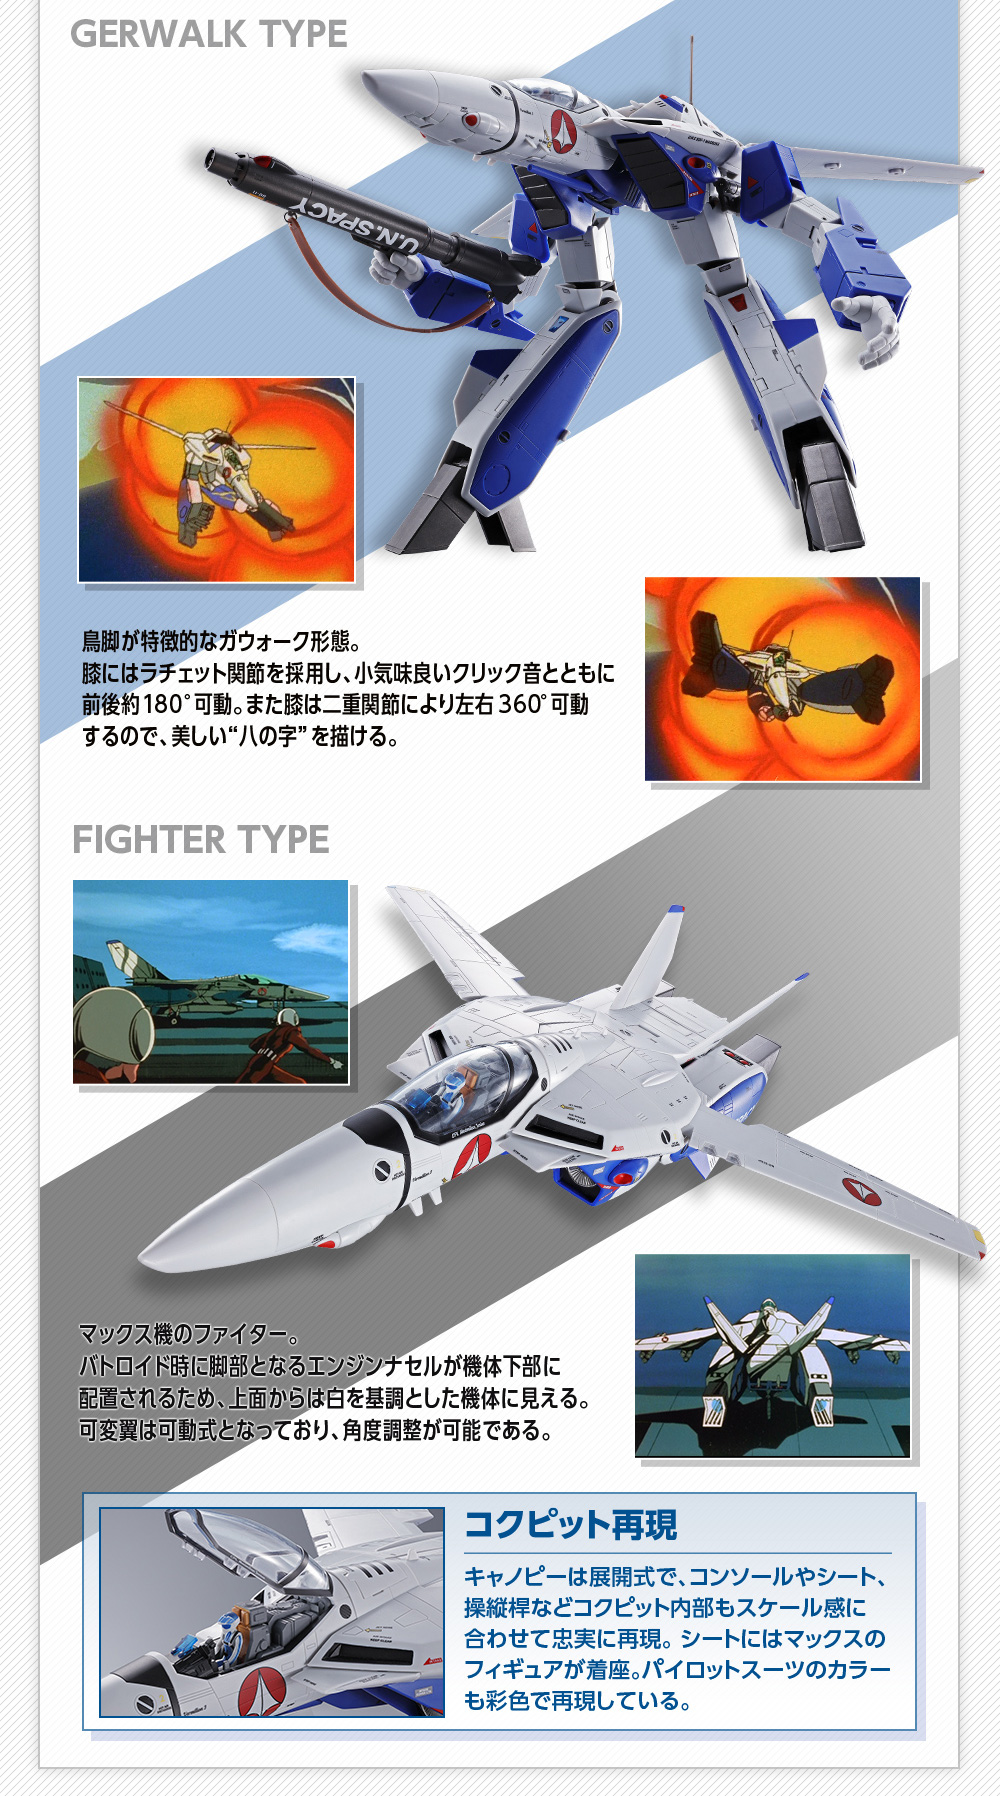 DX超合金 VF-1A バルキリー（マクシミリアン・ジーナス機） スペシャル 